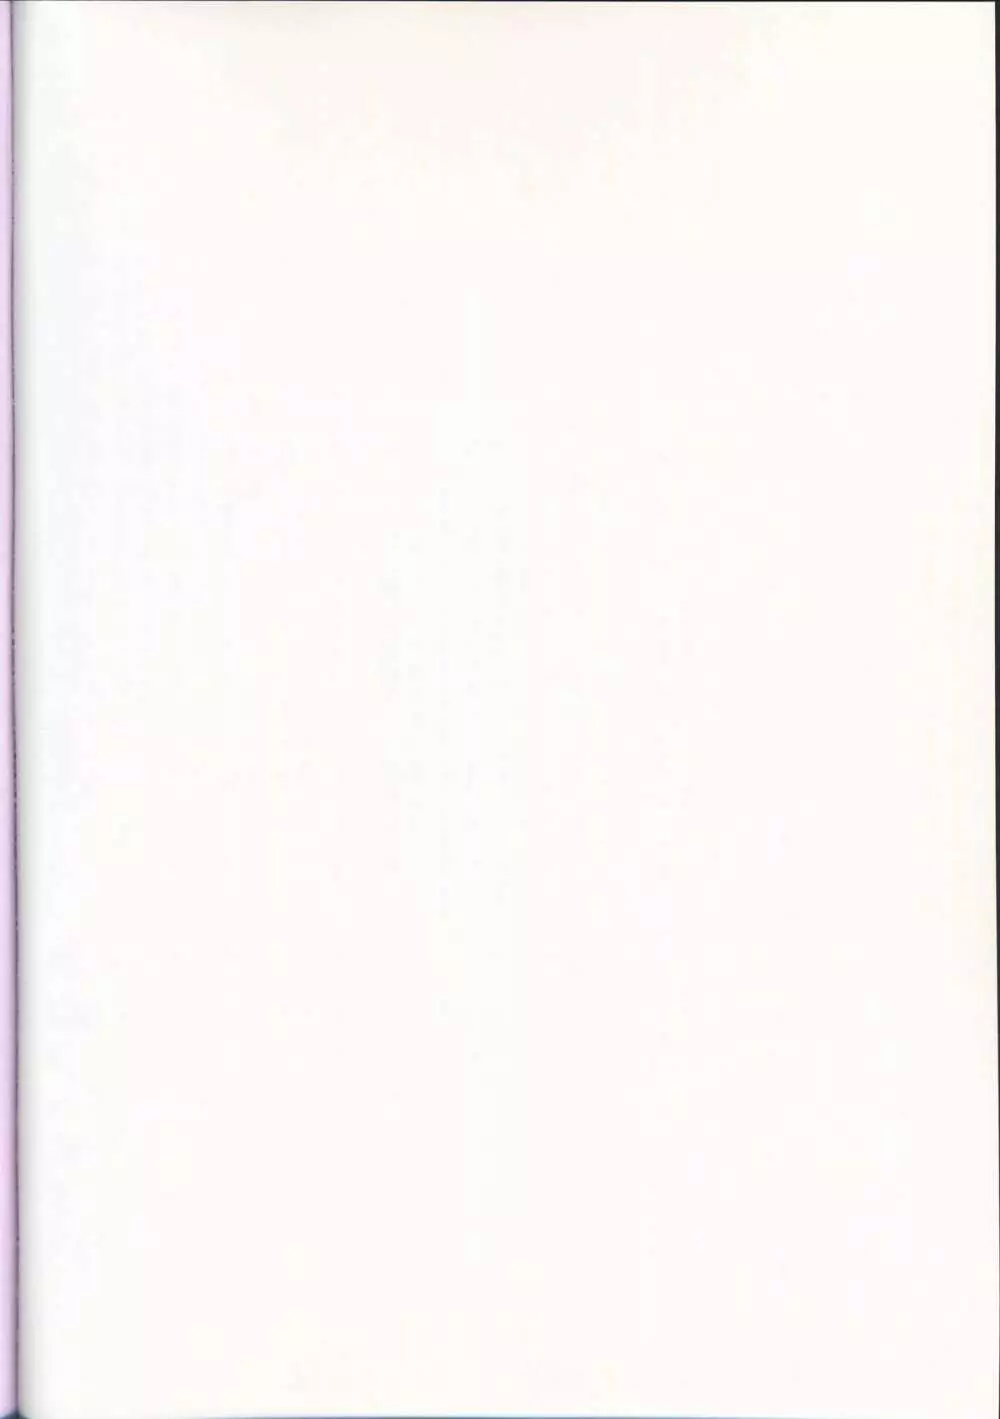 少女通販カタログ Vol.2 2007 Winter Collection 2ページ